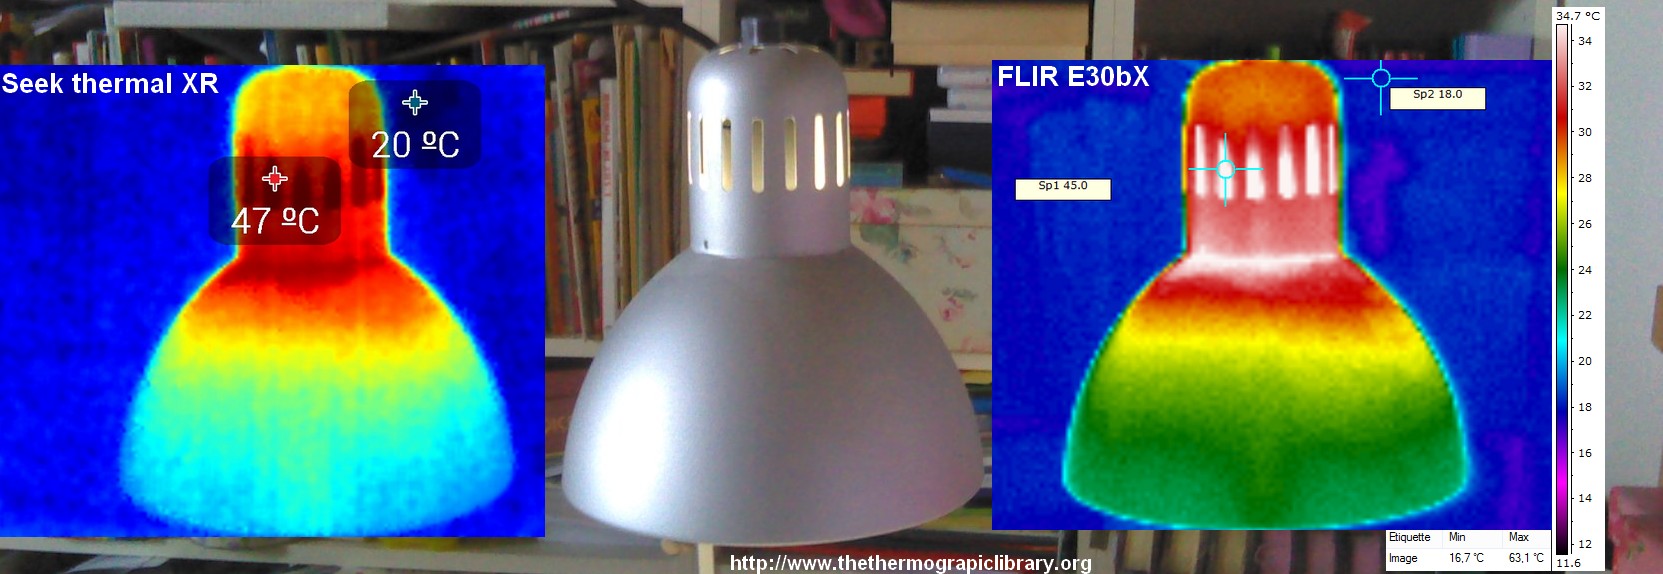 Comparaison de deux caméras de thermographie, la professionnelle FLIR E30bX et la micro USB pour smartphone Seek thermal XR